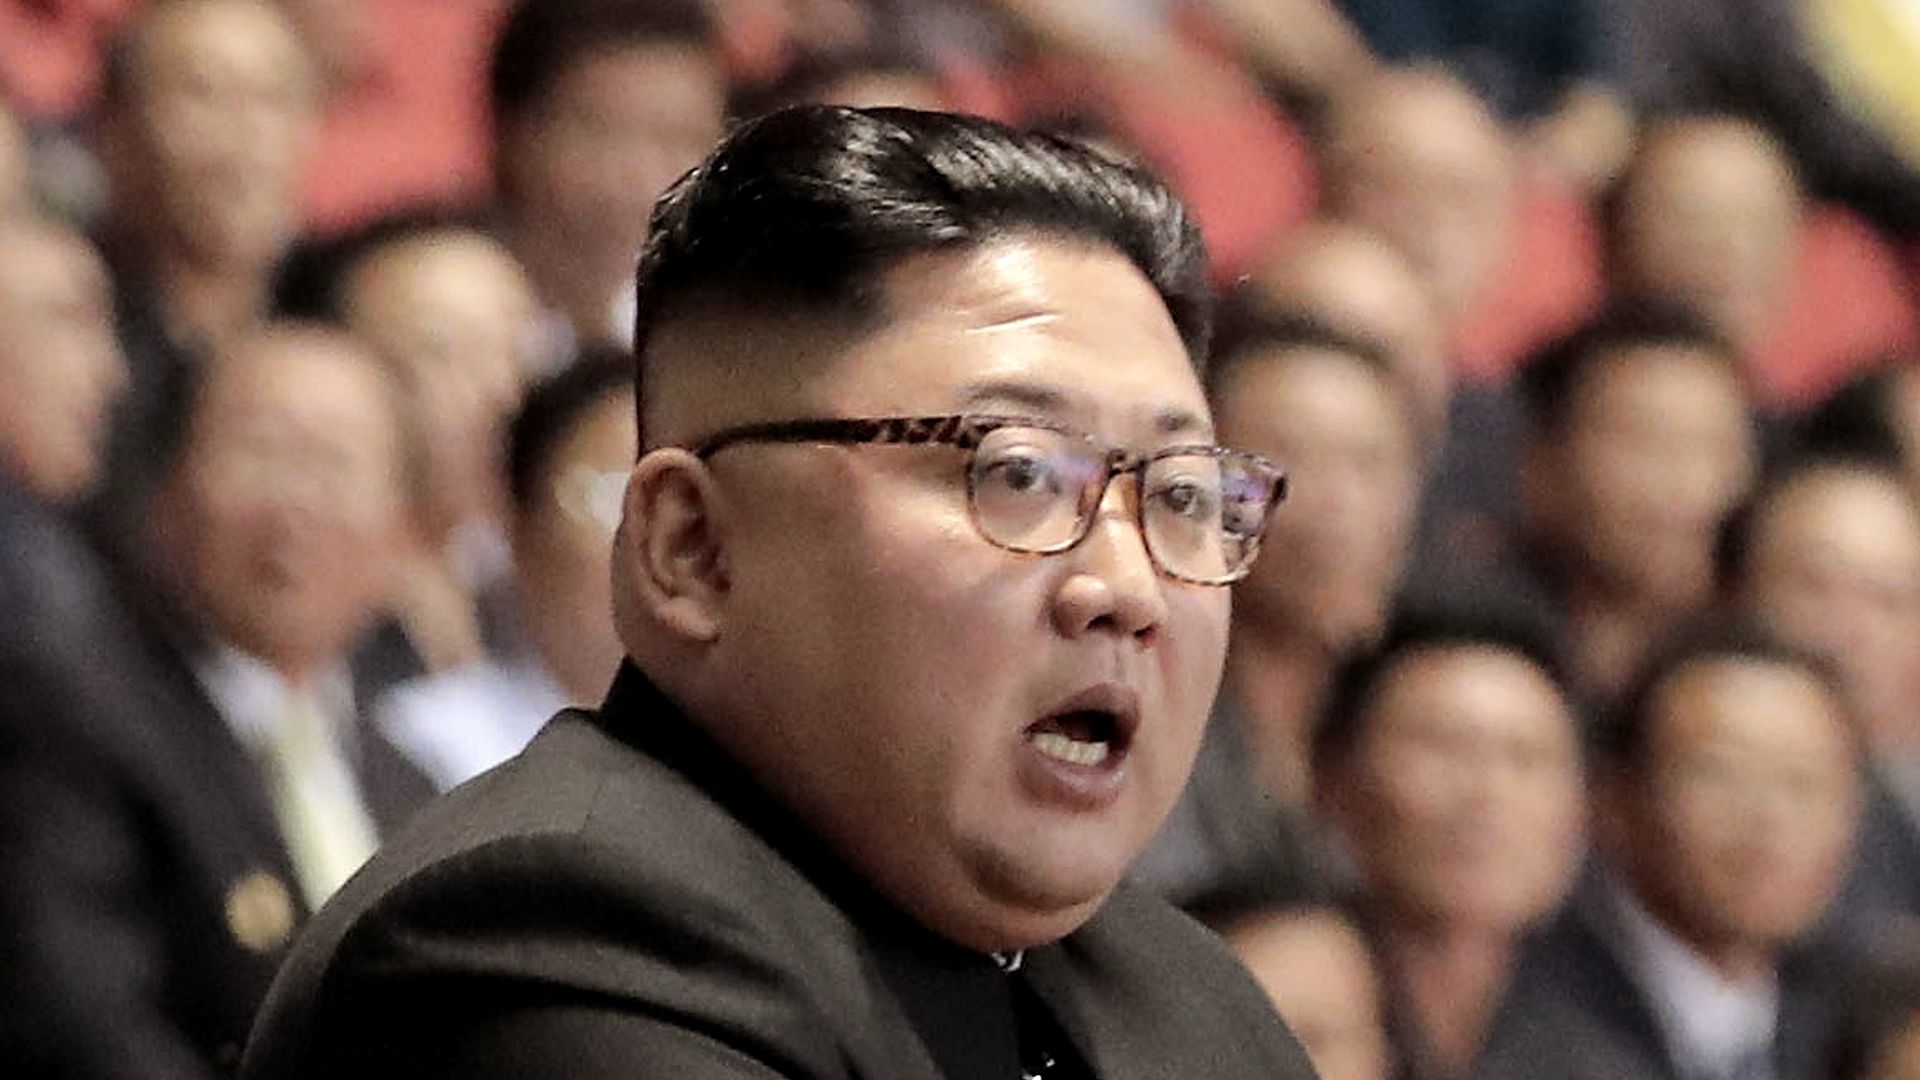 Kim Jong-un during a speech.